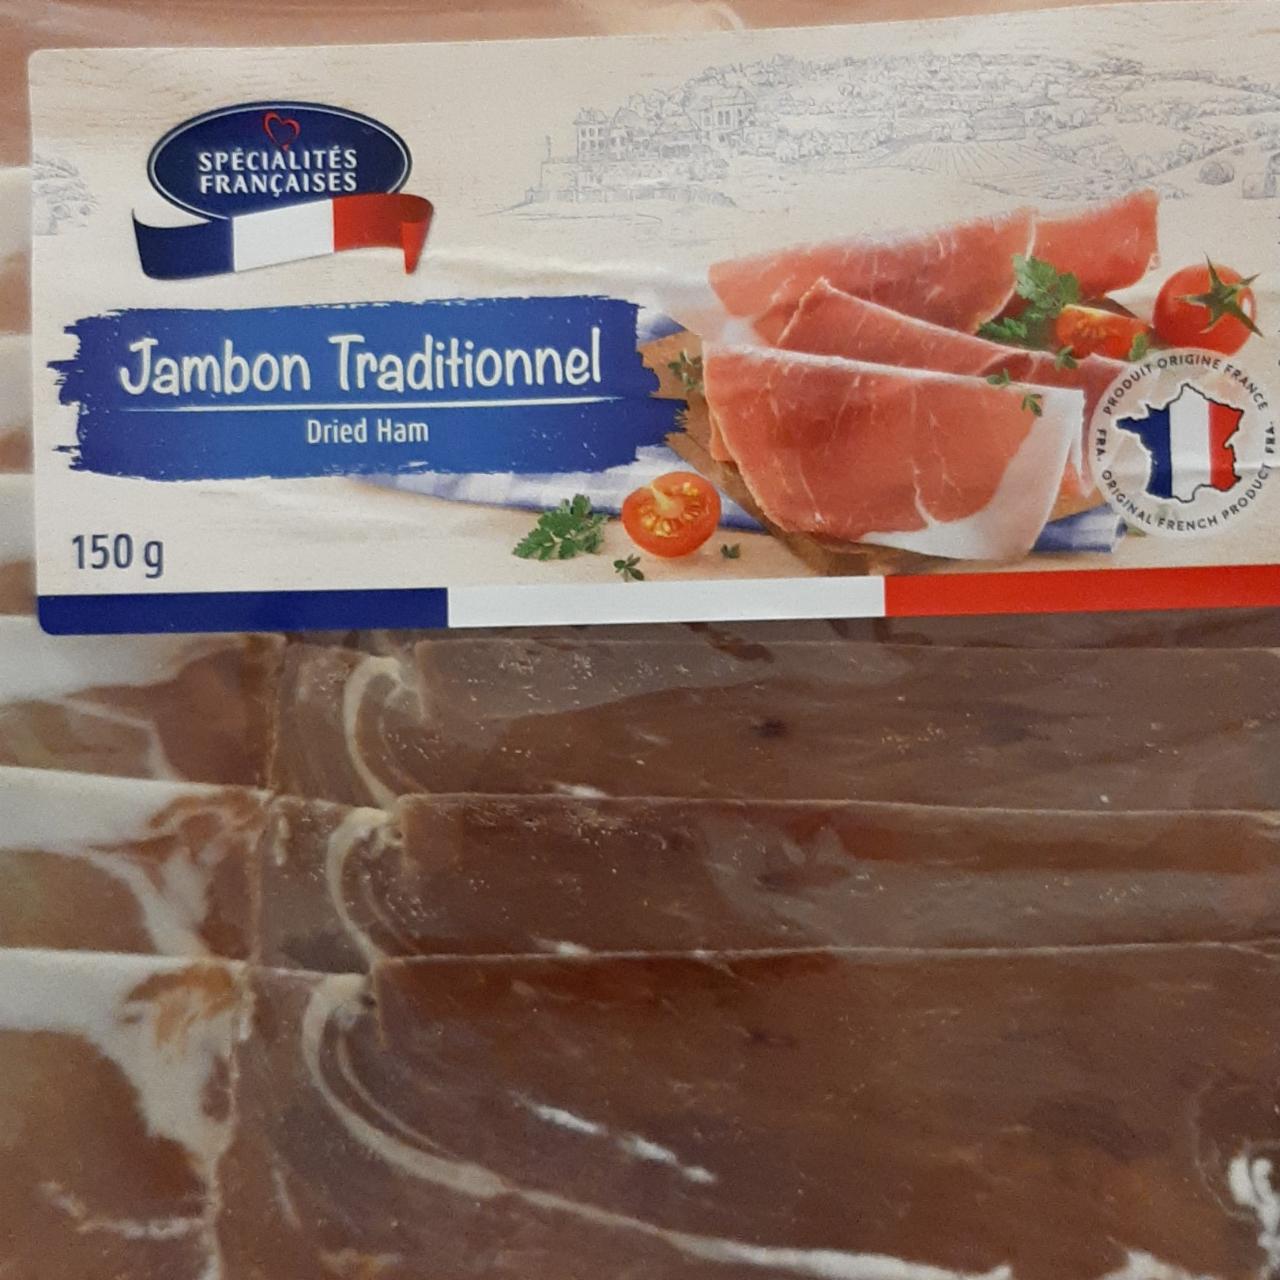 Képek - Jambon traditionnel dried ham Spécialités Françaises